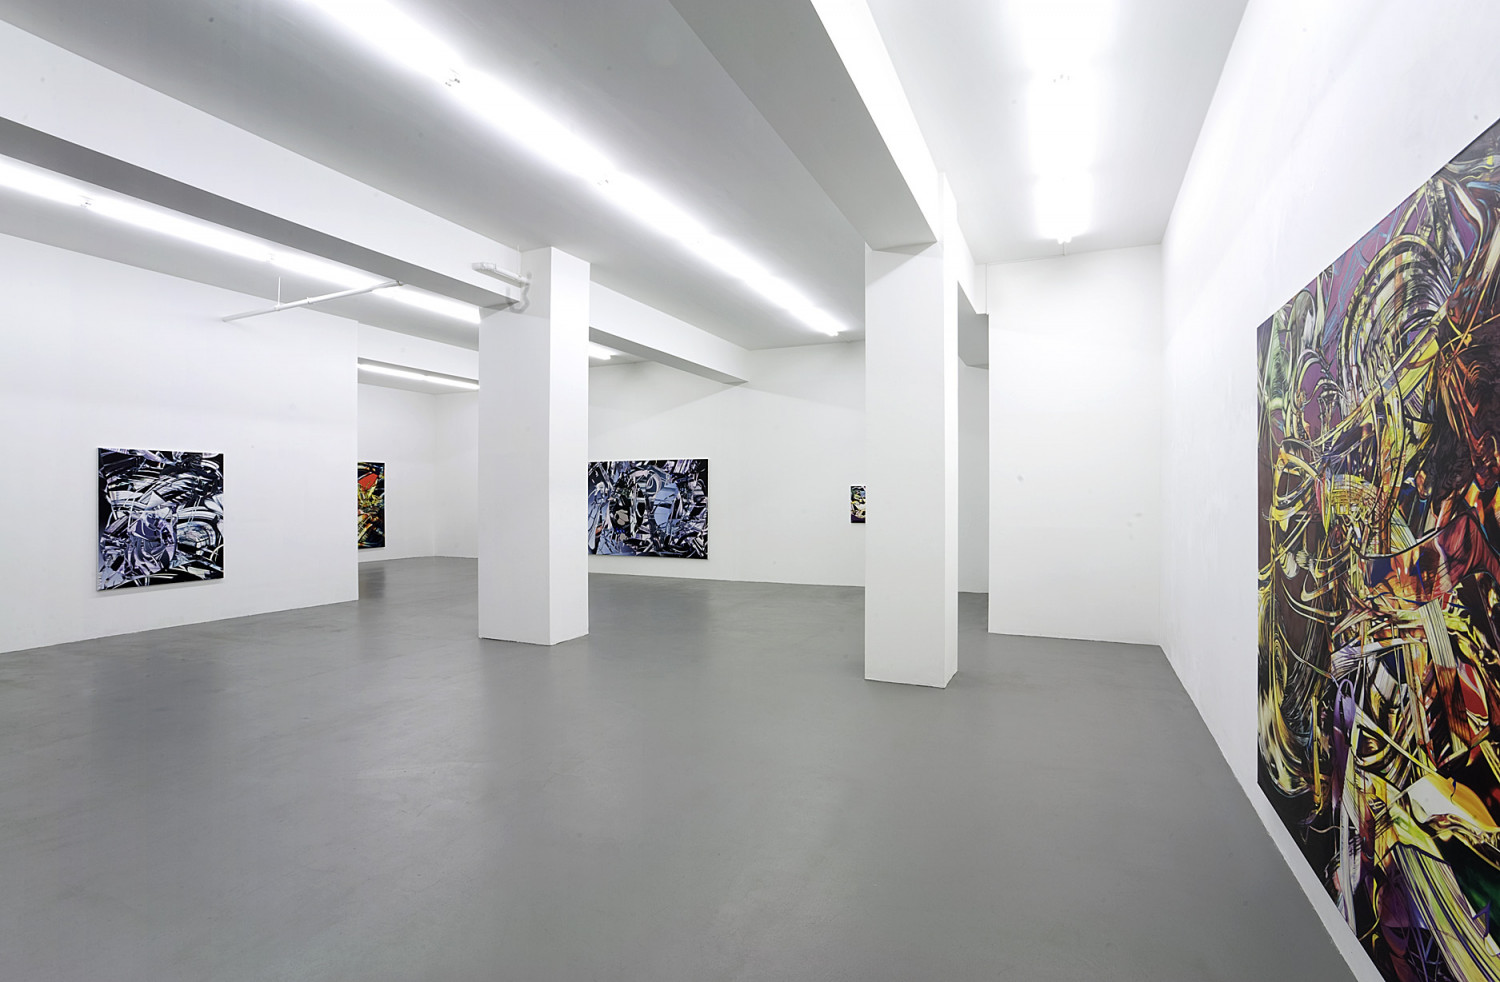 Sean Dawson, Installationsansicht, Buchmann Galerie, 2008